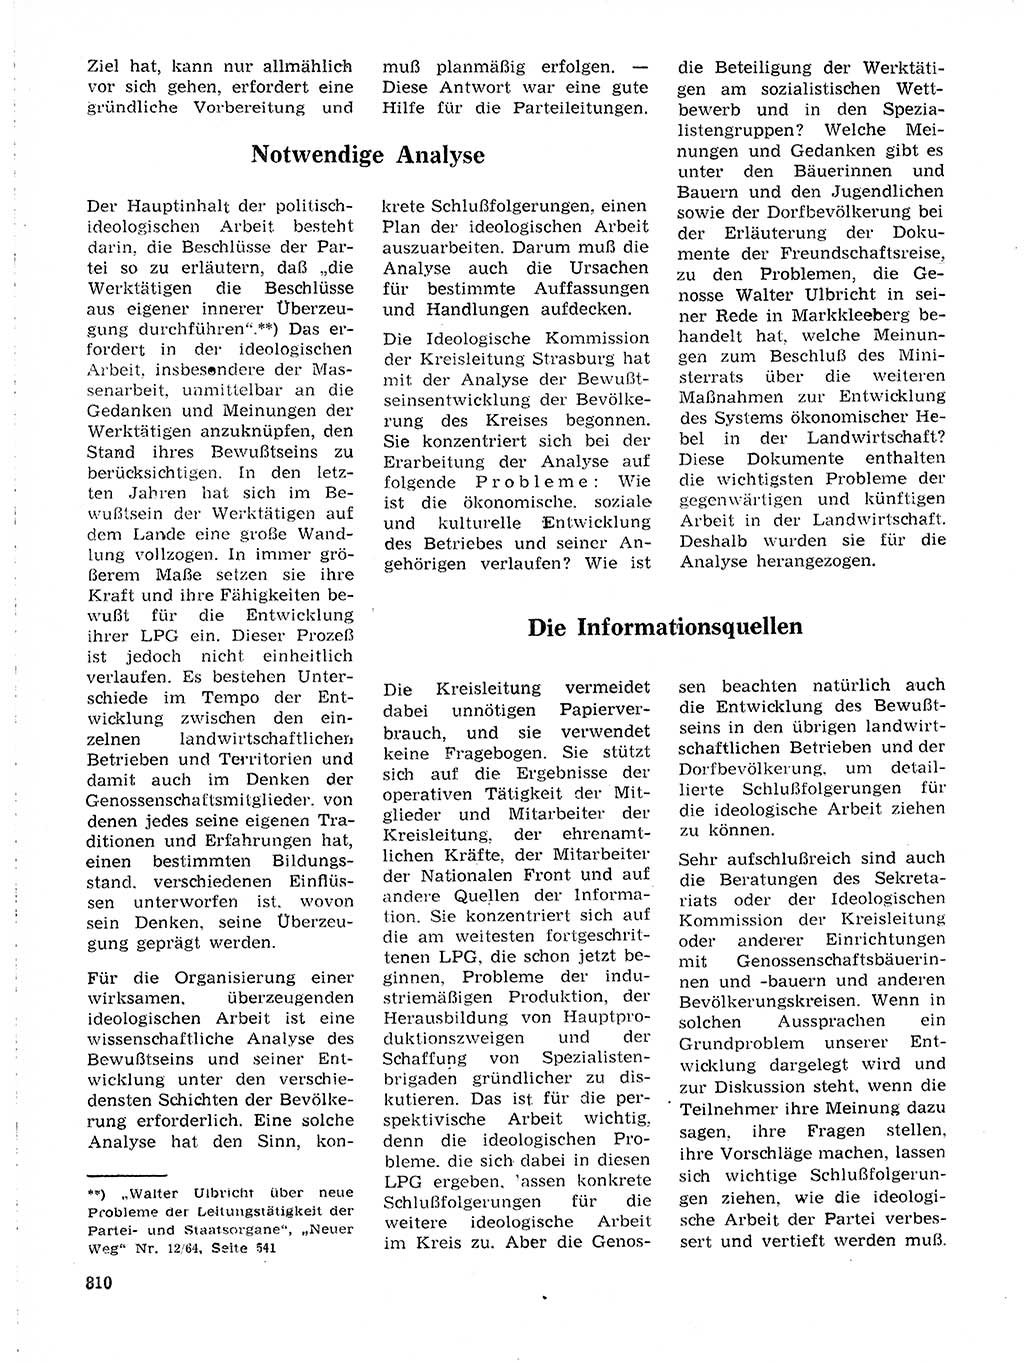 Neuer Weg (NW), Organ des Zentralkomitees (ZK) der SED (Sozialistische Einheitspartei Deutschlands) für Fragen des Parteilebens, 19. Jahrgang [Deutsche Demokratische Republik (DDR)] 1964, Seite 810 (NW ZK SED DDR 1964, S. 810)